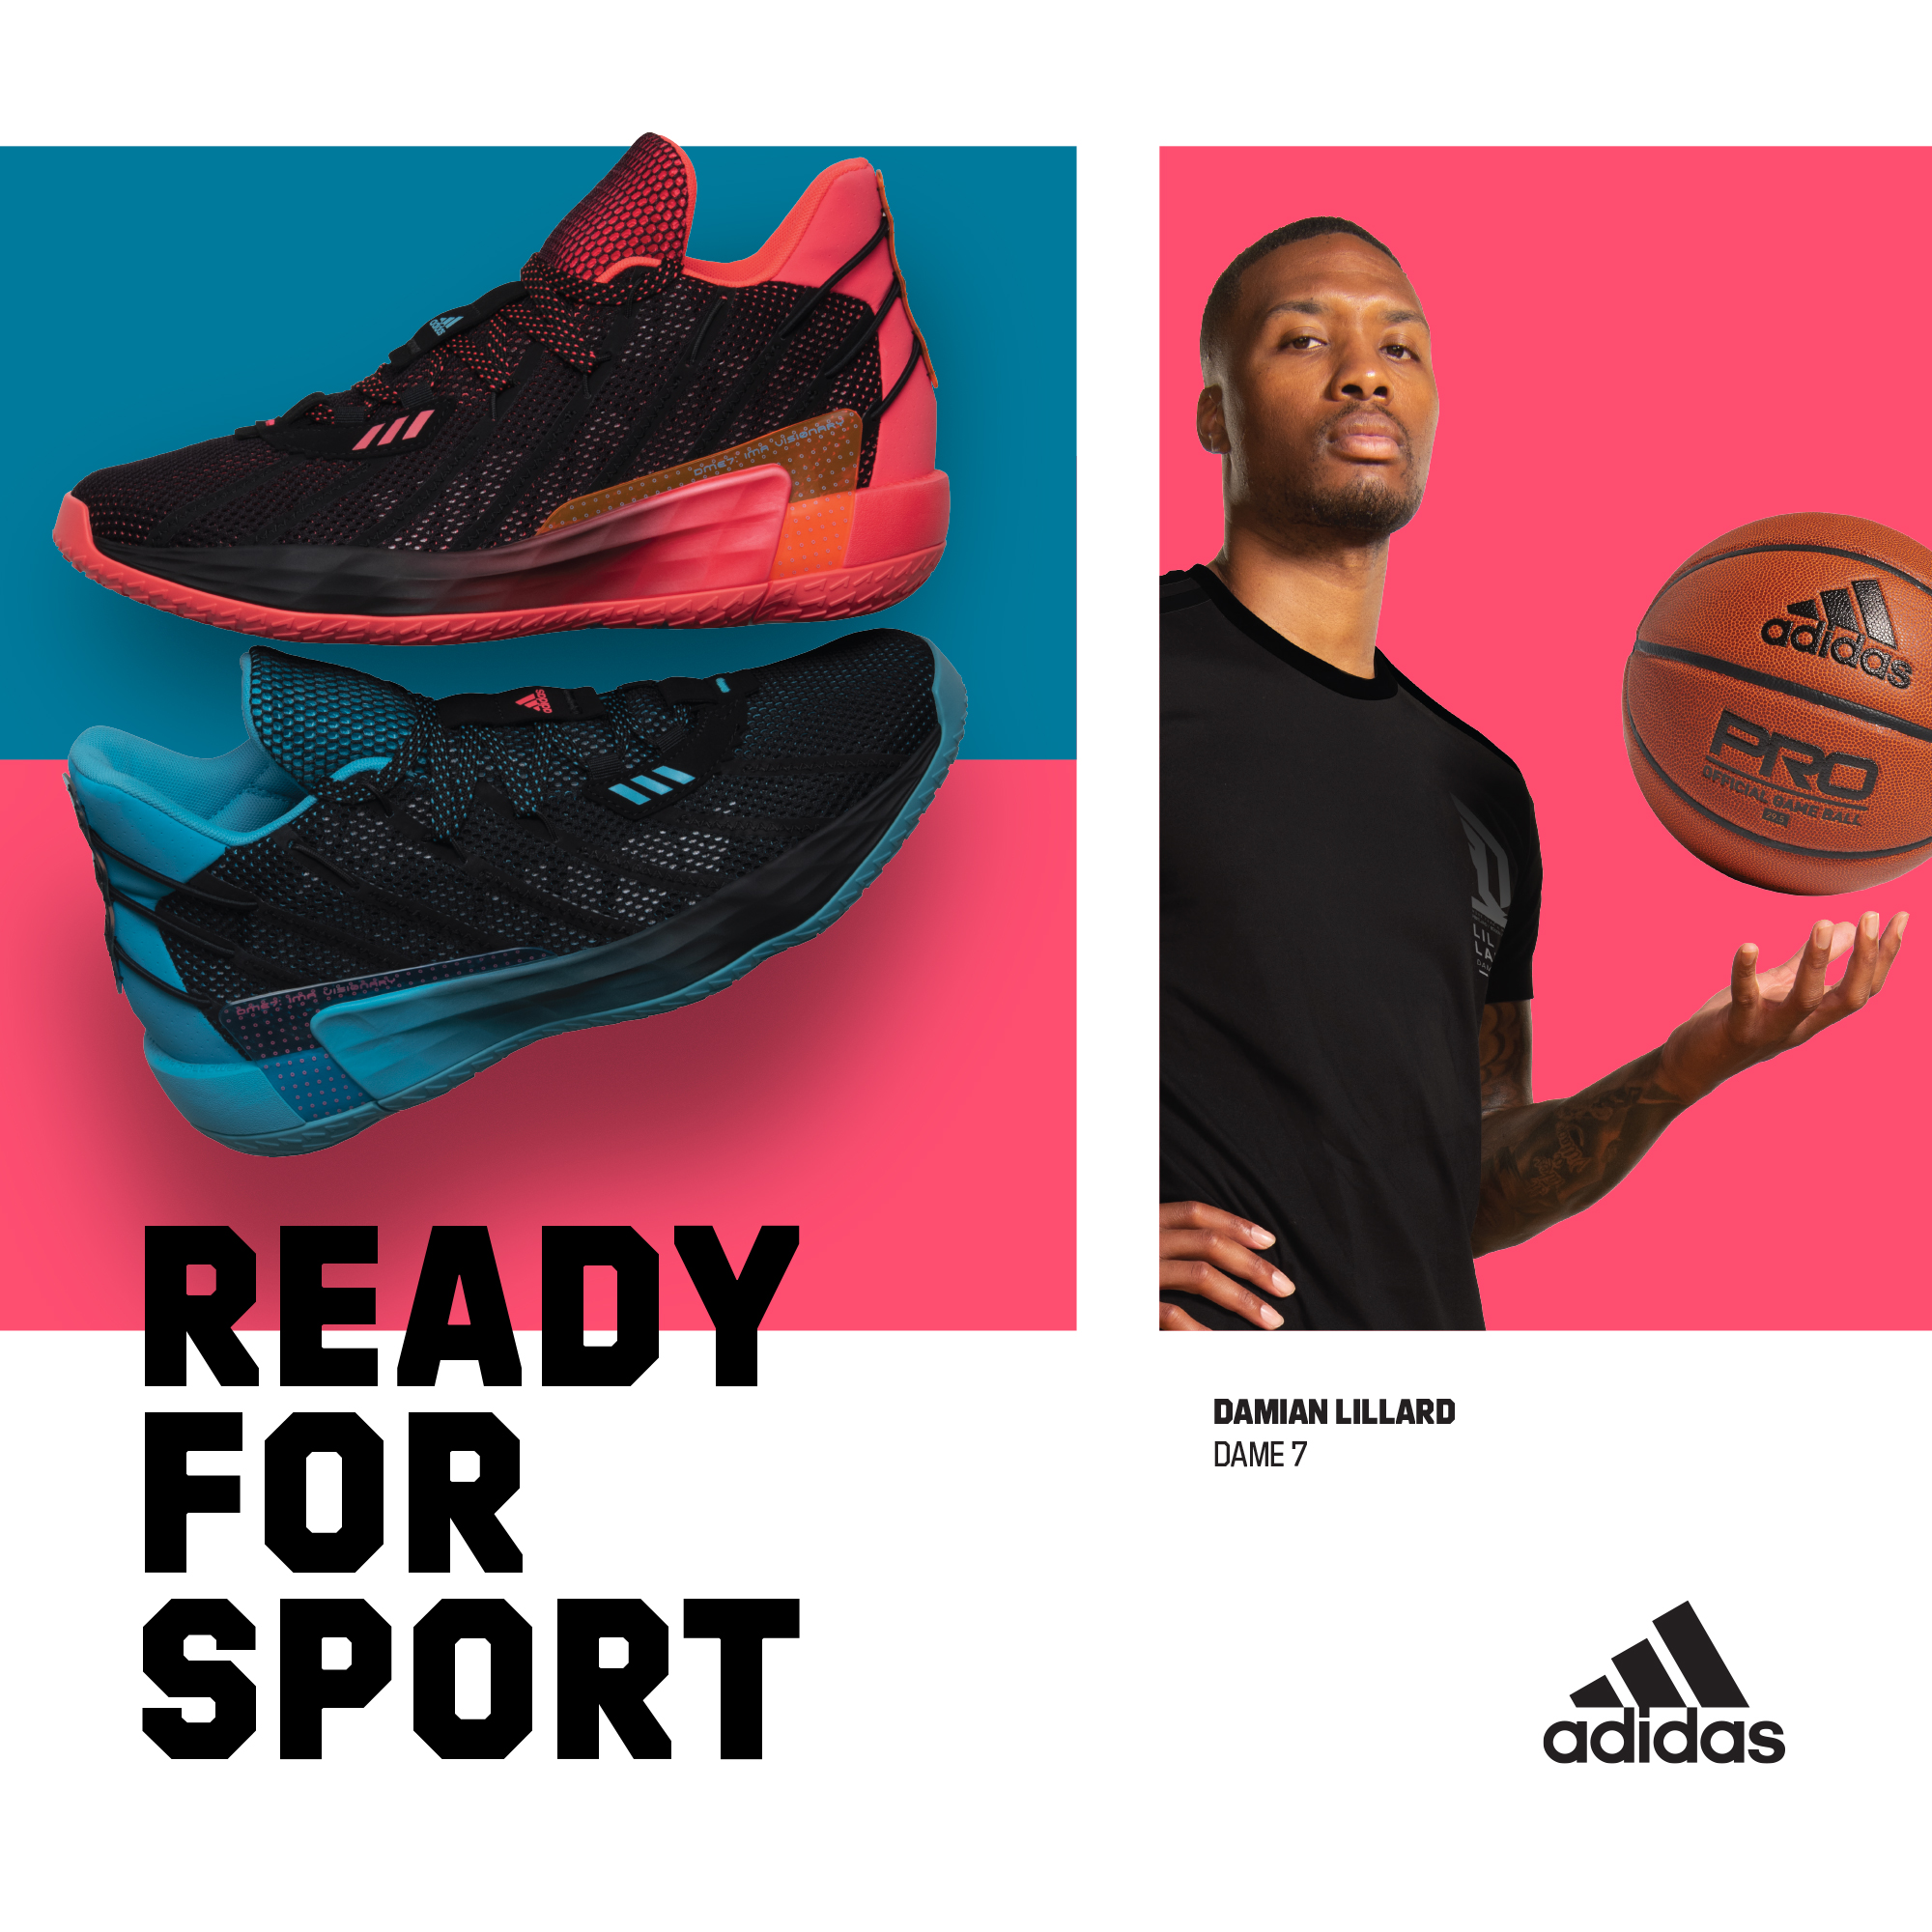 adidas basketball brand ambassador